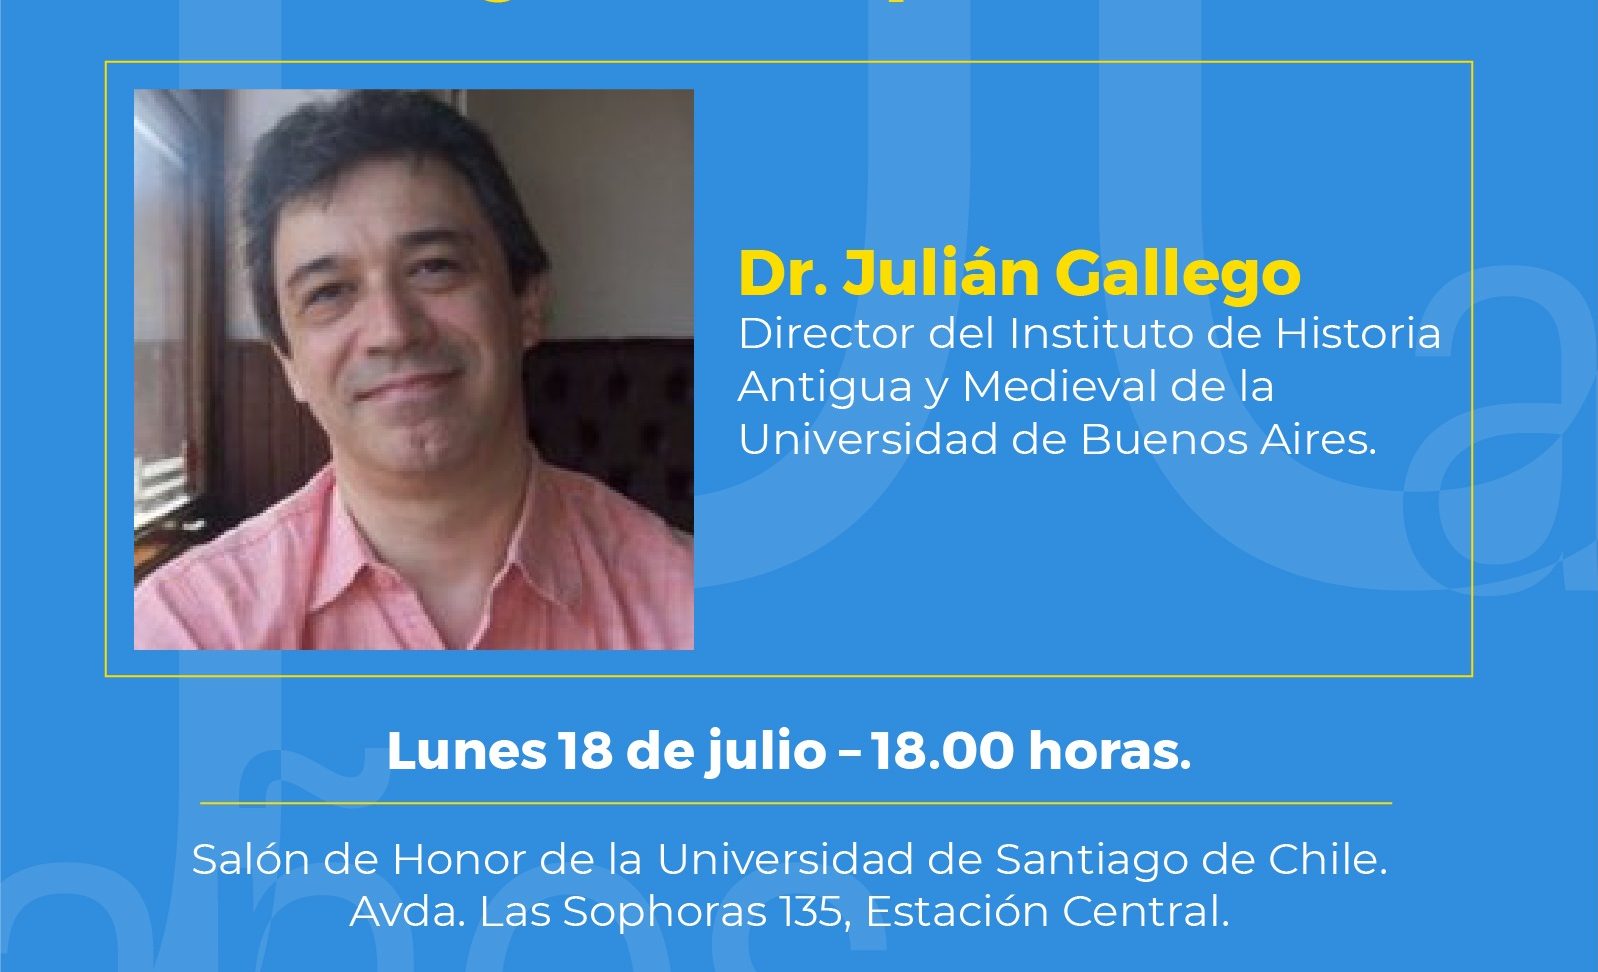  Dr. Julián Gallego realizará una conferencia sobre estudios clásicos en la Universidad de Santiago de Chile